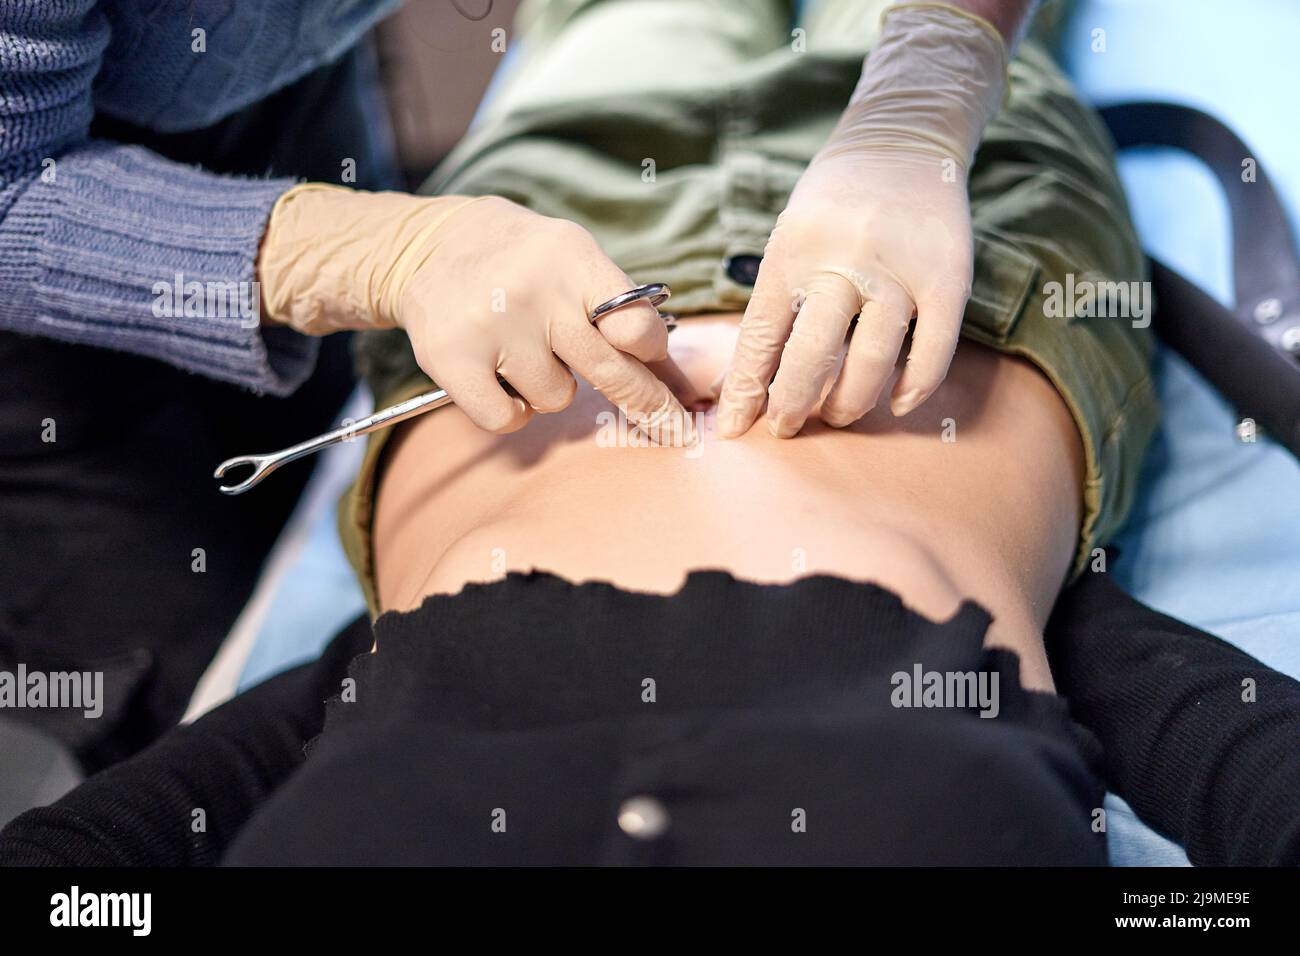 Alto angolo di anonima modifica del corpo artista pizzicando il pulsante della pancia del cliente femminile durante la procedura di piercing in salone Foto Stock